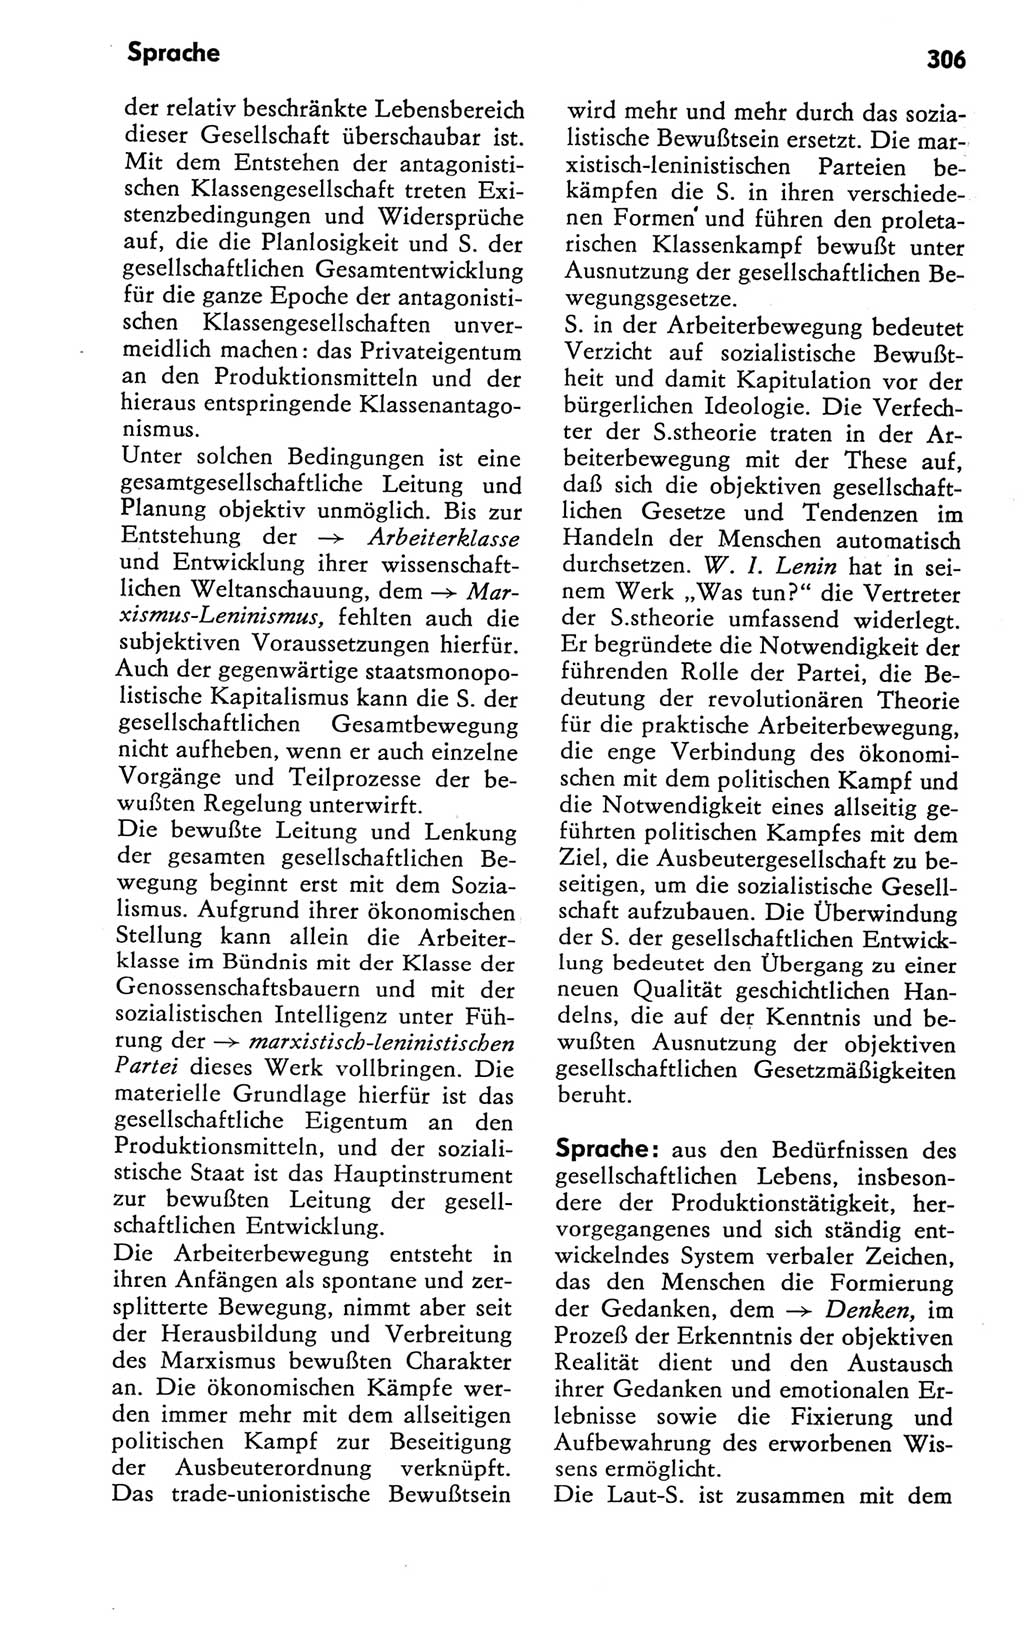 Kleines Wörterbuch der marxistisch-leninistischen Philosophie [Deutsche Demokratische Republik (DDR)] 1981, Seite 306 (Kl. Wb. ML Phil. DDR 1981, S. 306)